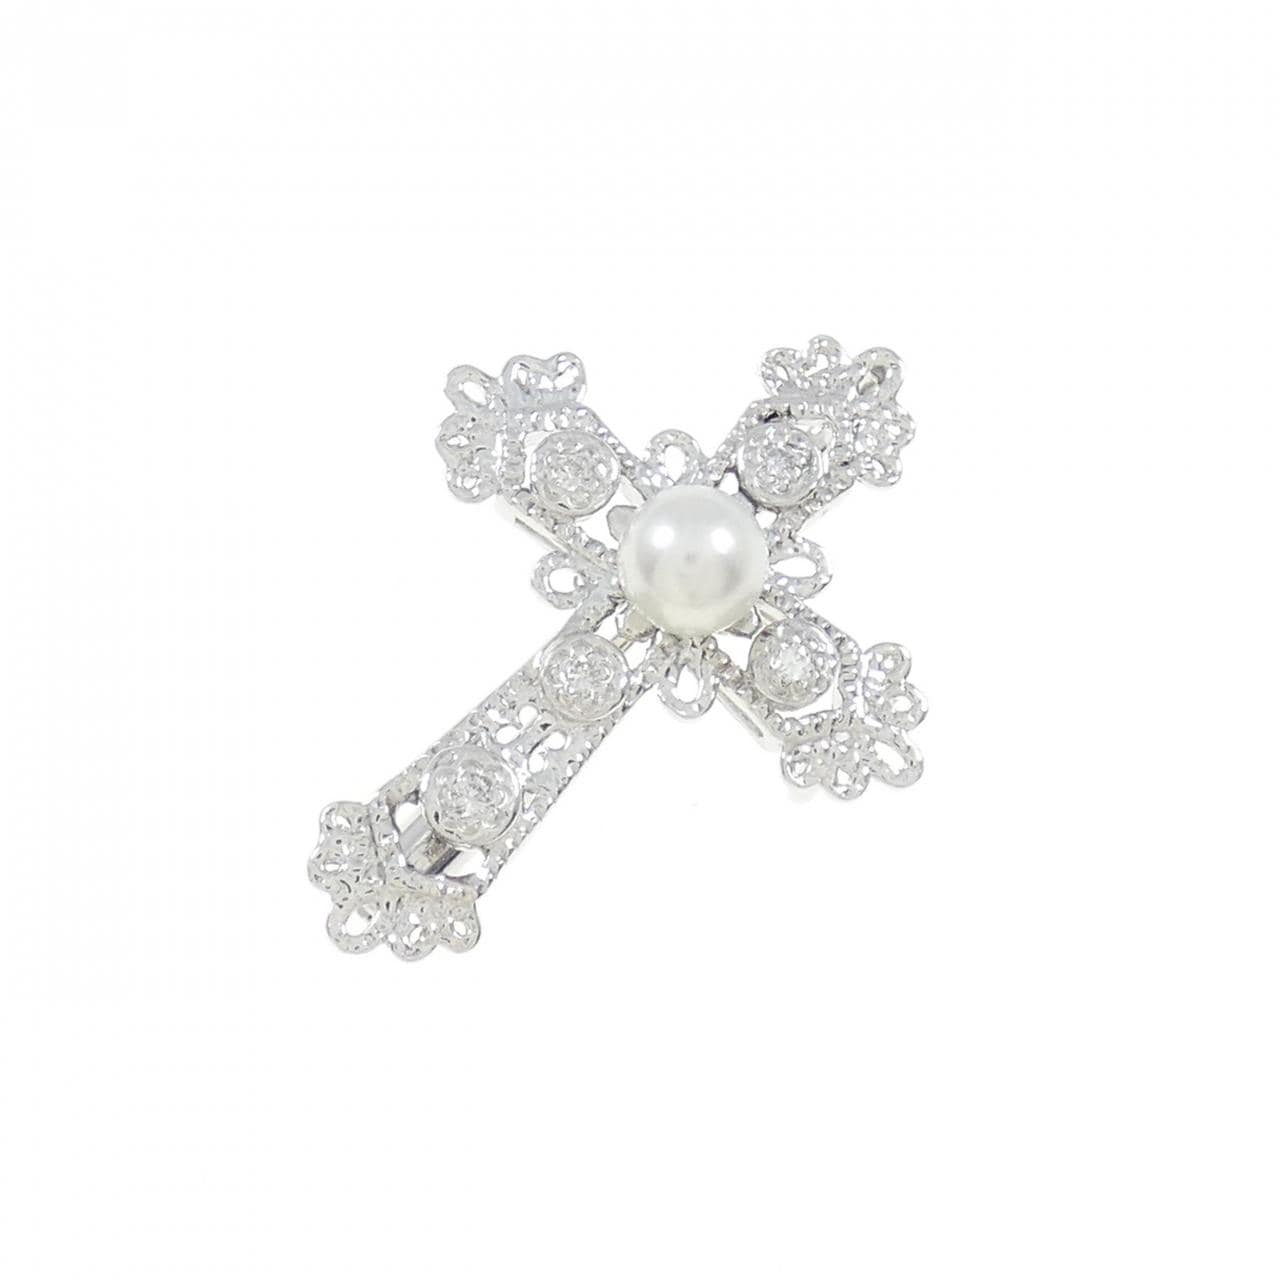 K18WG Cross Akoya Pearl Necklace 4mm